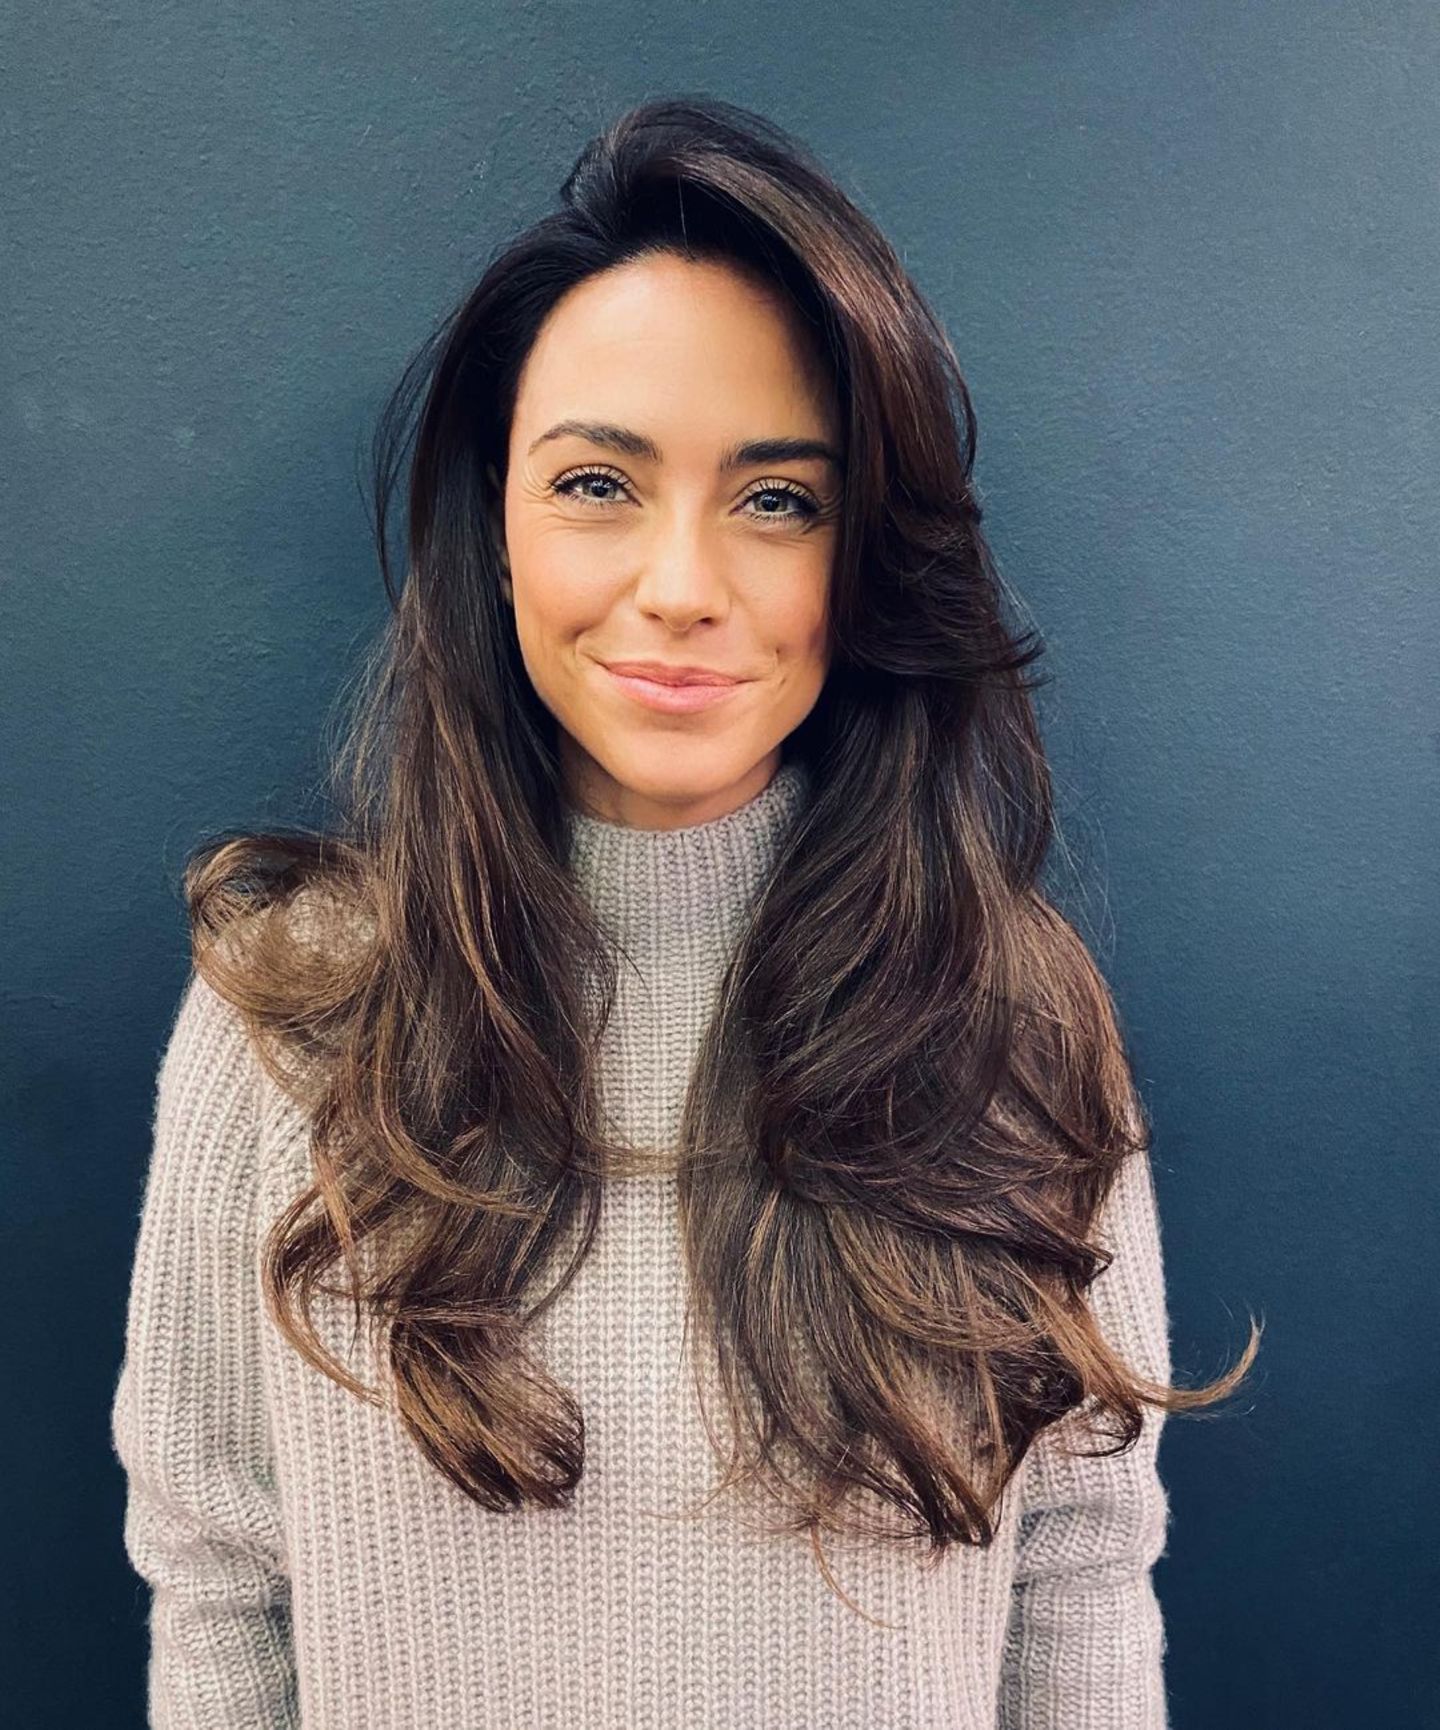 Auch Moderatorin Franca Lehfeldt beginnt das neue Jahr mit dunkleren Haaren. Kurz nach ihrem Friseurbesuch postet Franca dieses Instagramfoto mit sexy Locken und sieht Sophia Thomalla dabei erstaunlich ähnlich.